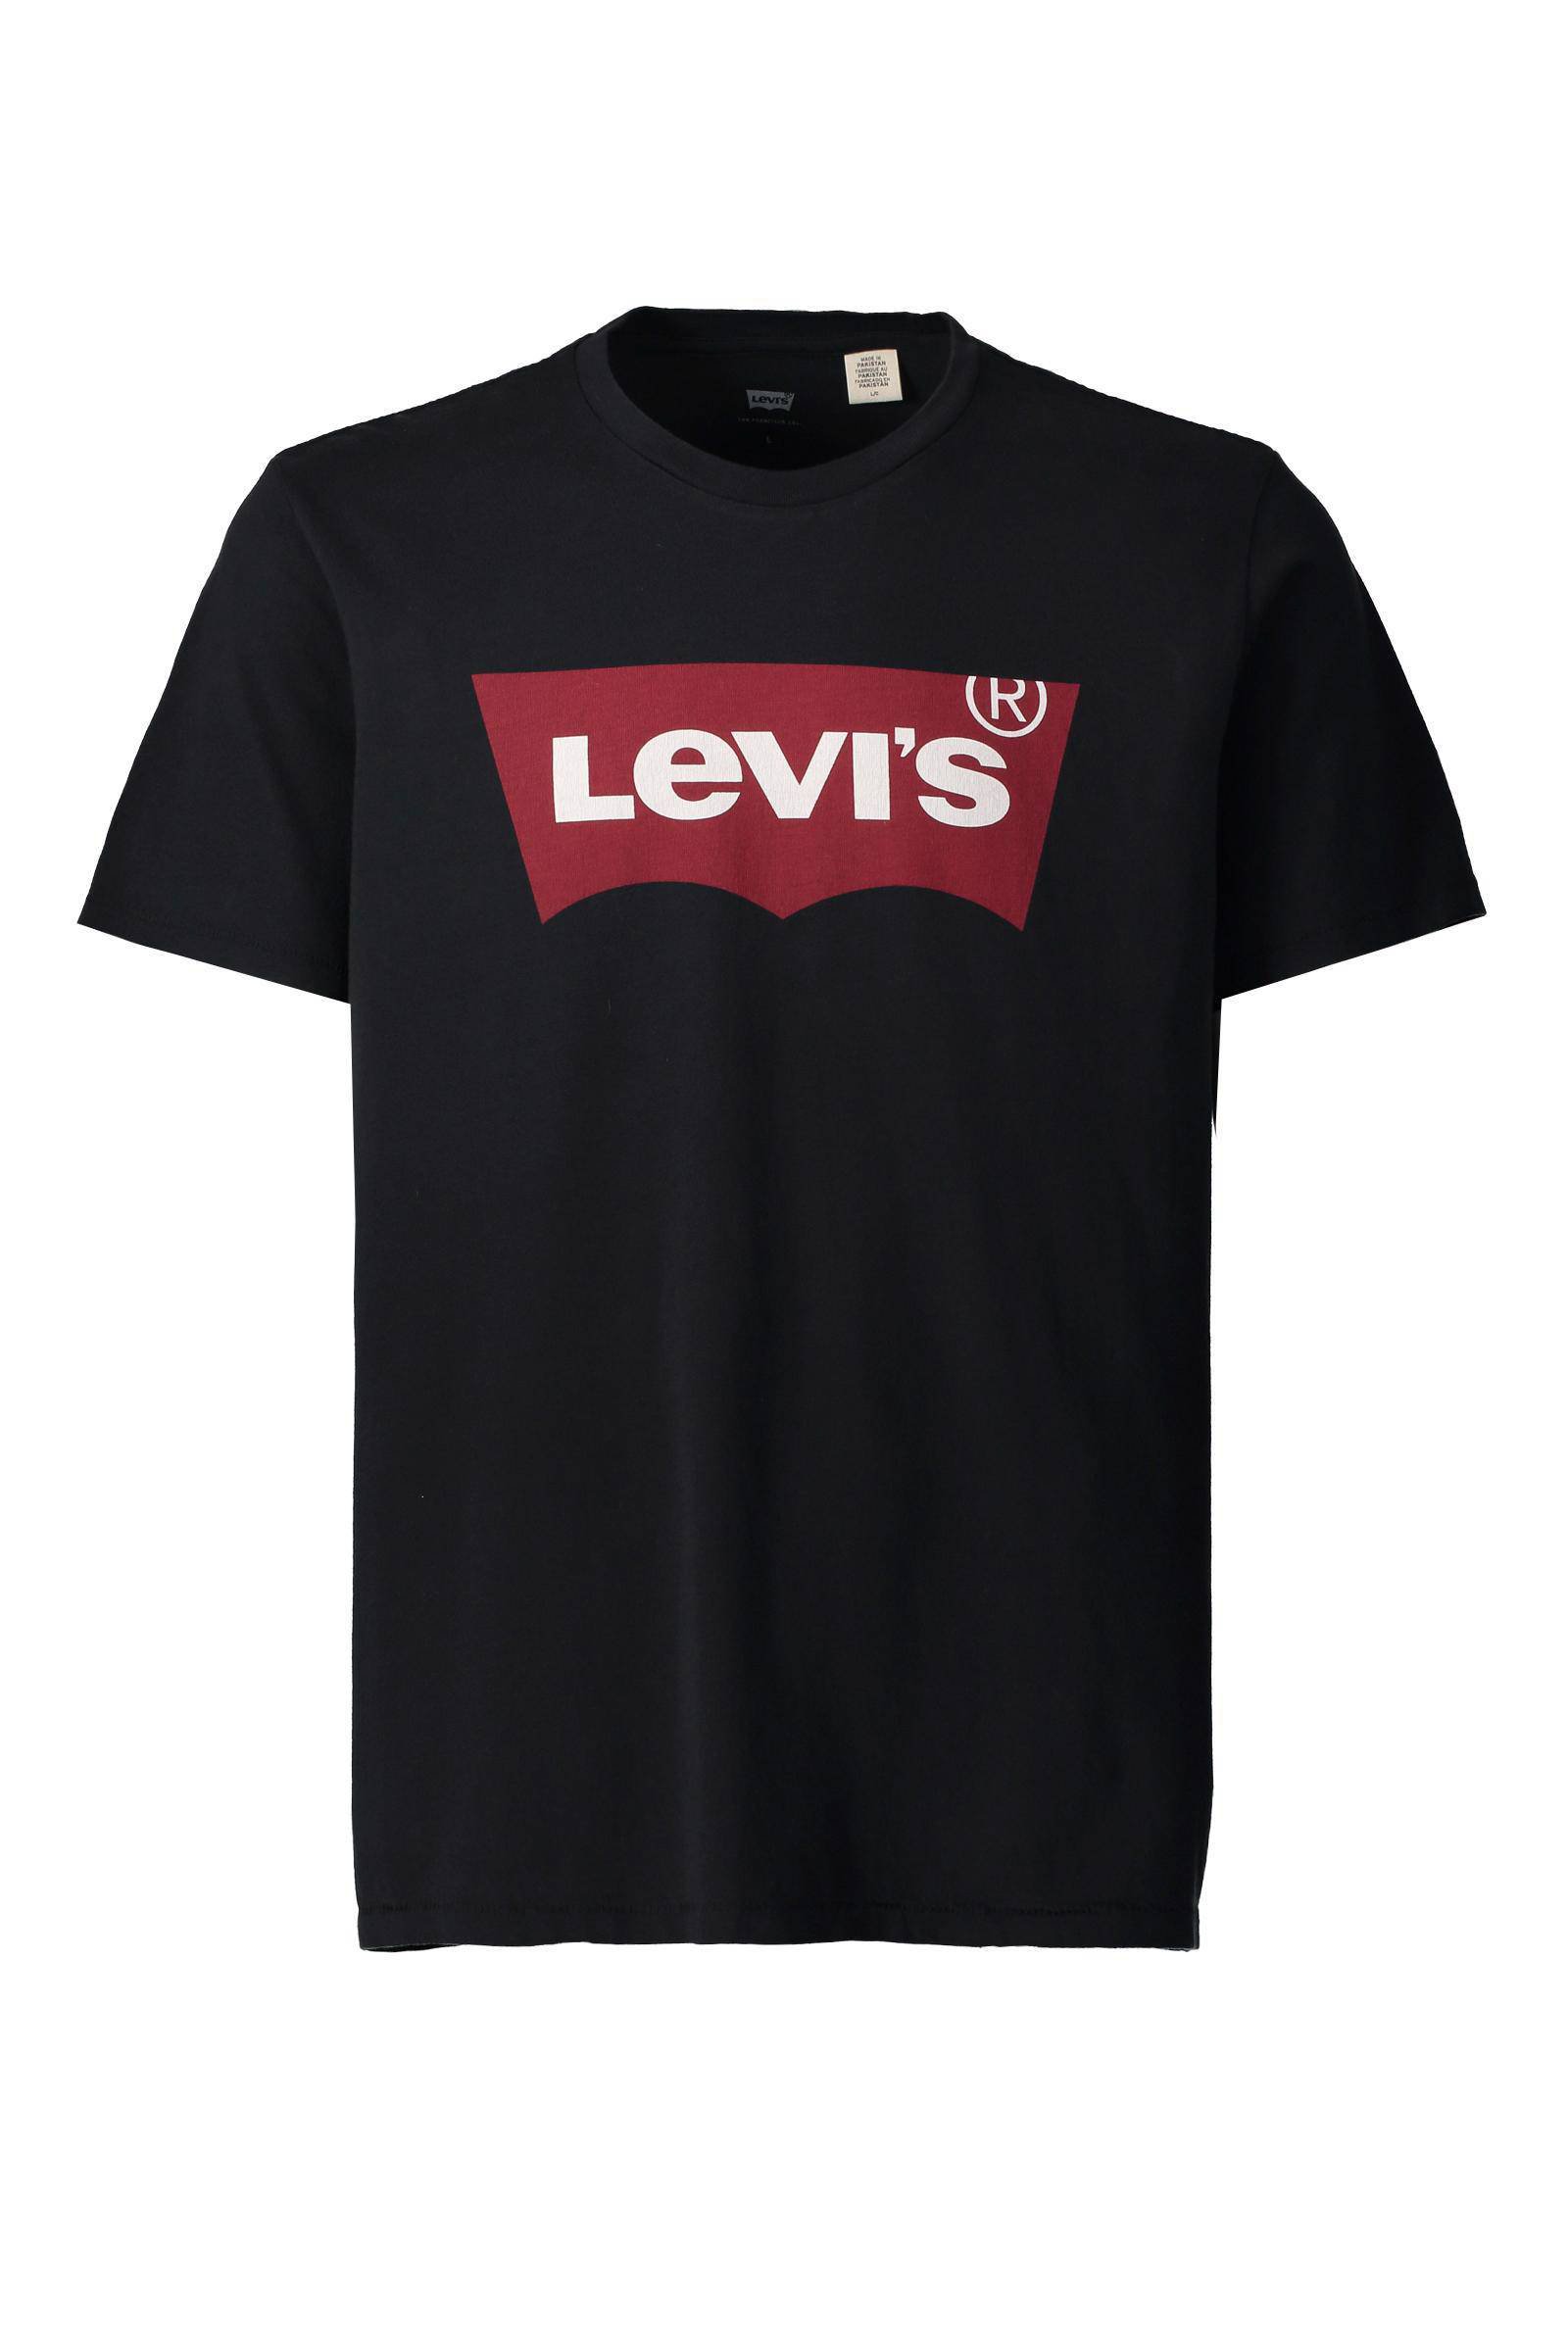 Levi's Shirt Zwart SAVE mpgc.net